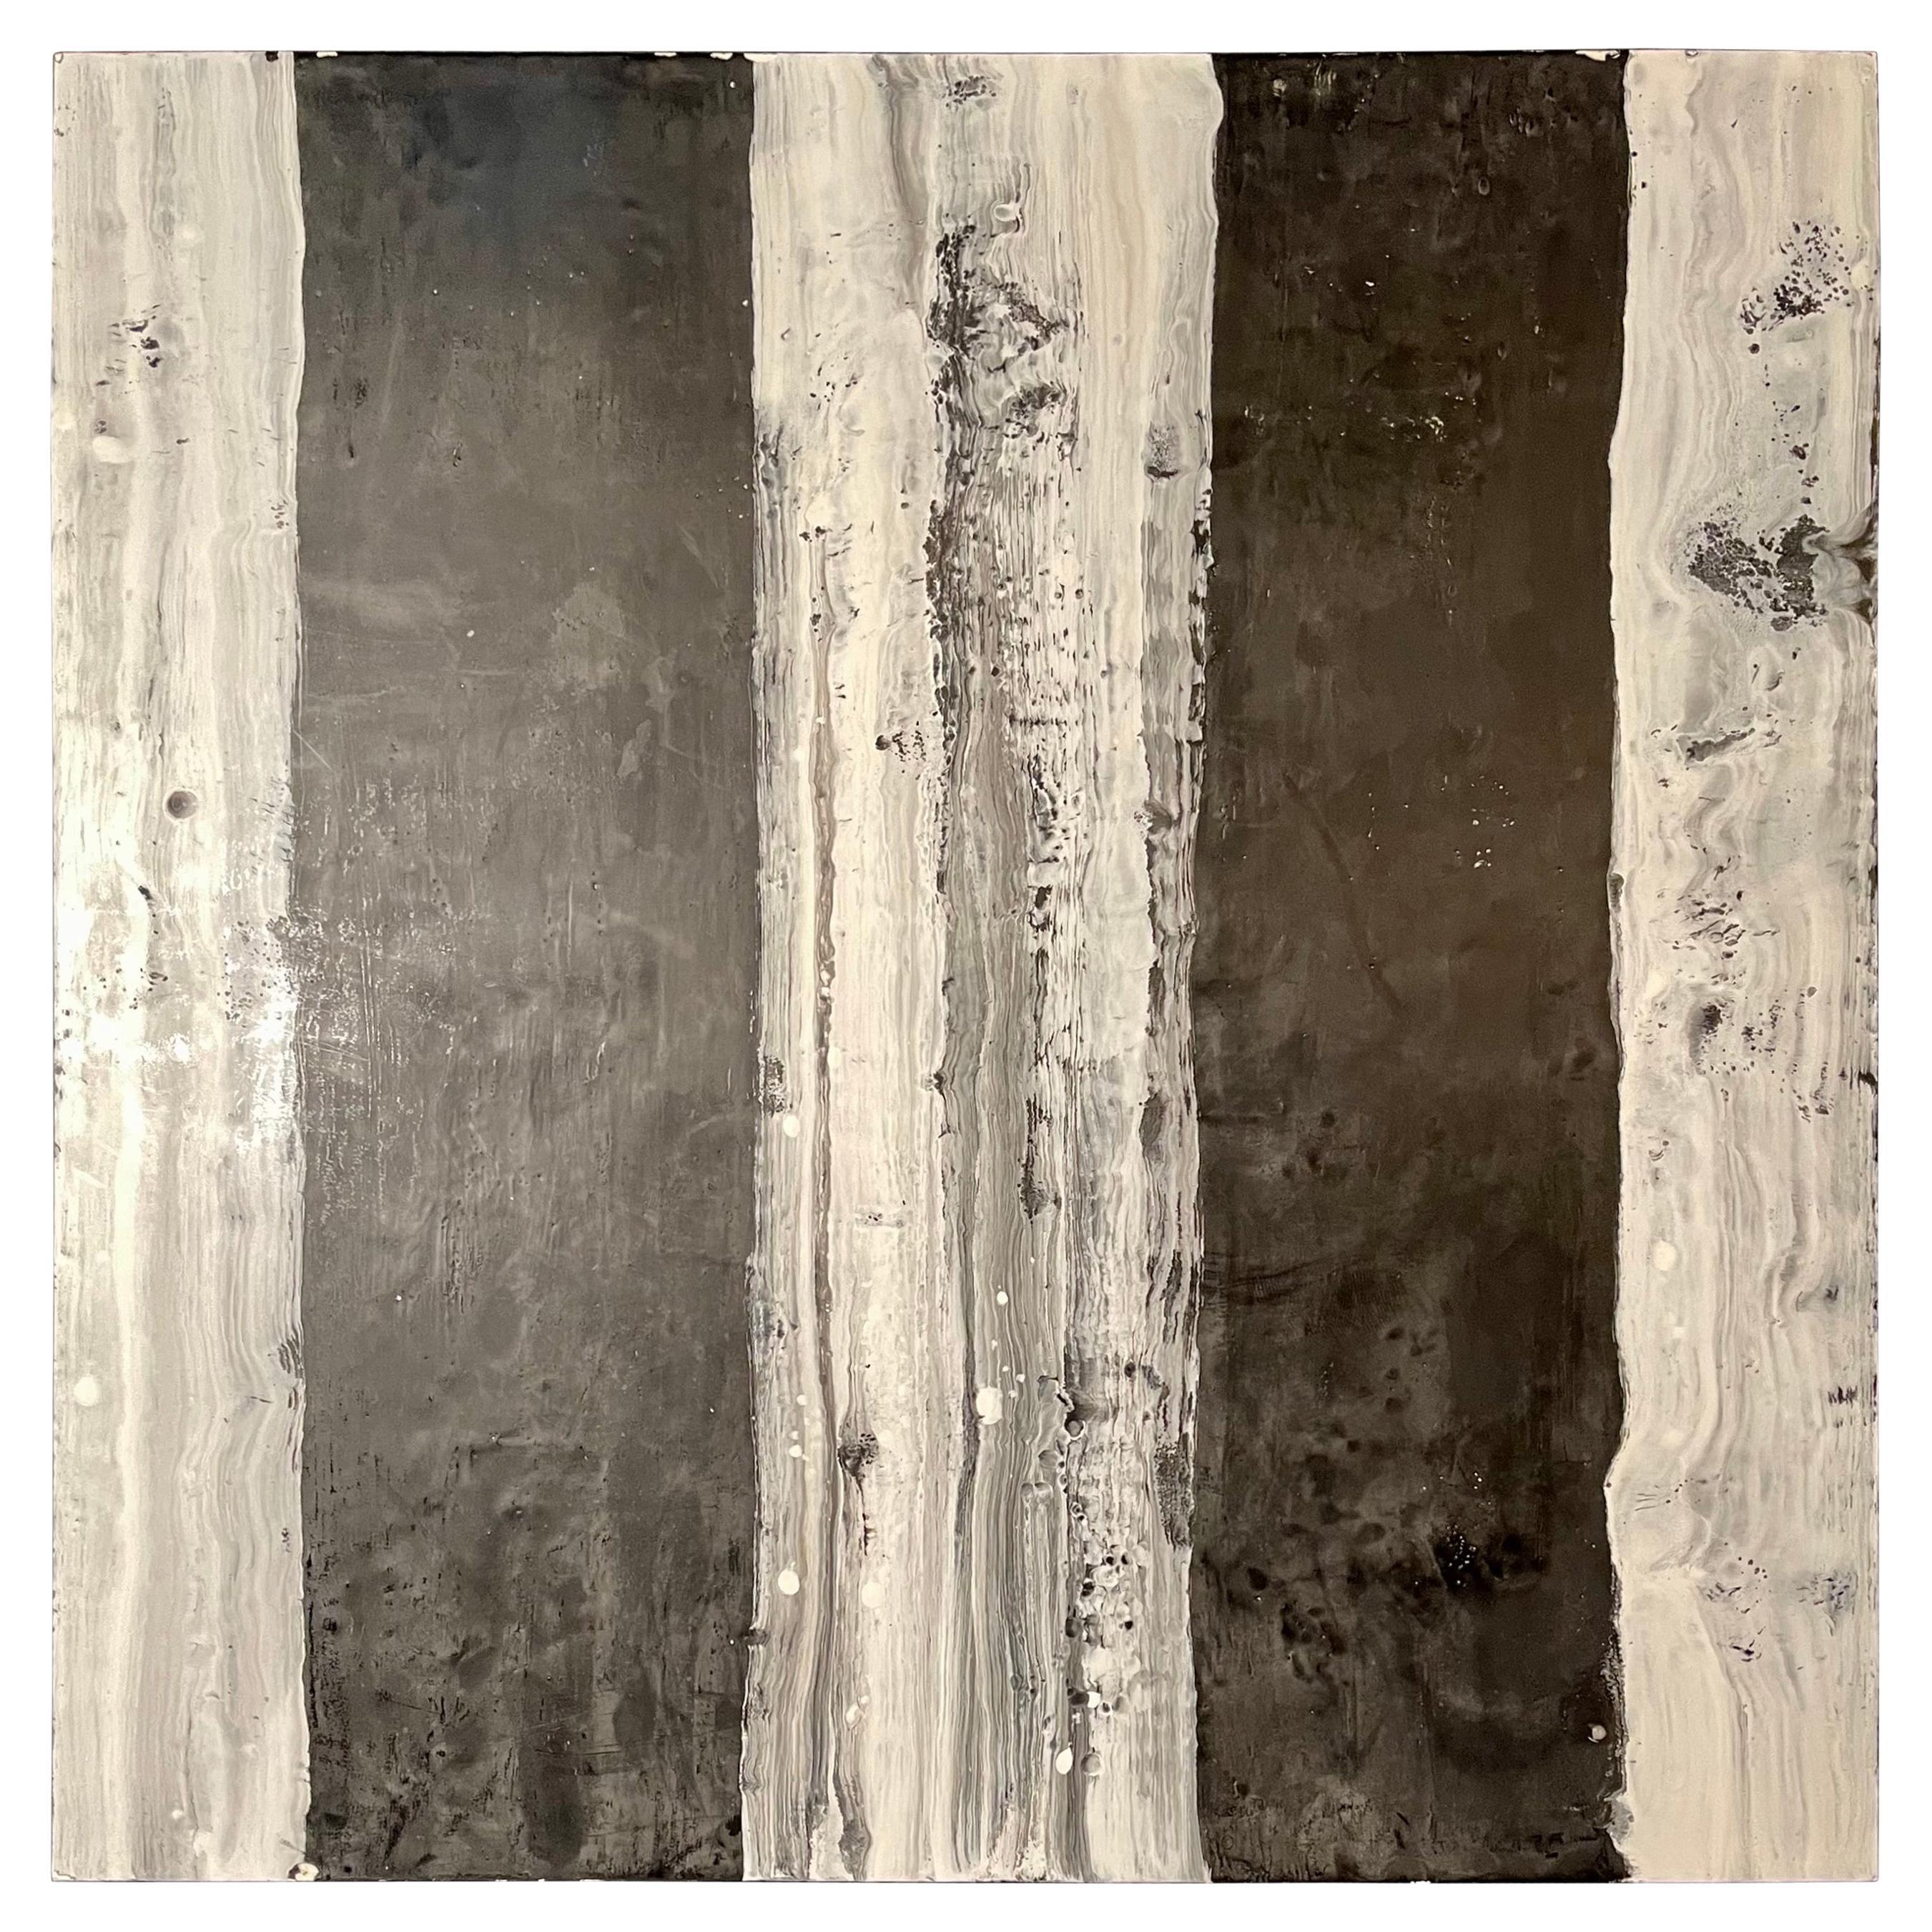 Lynn Basa Encaustic Black and White Stripe Panel "Camino", 2018